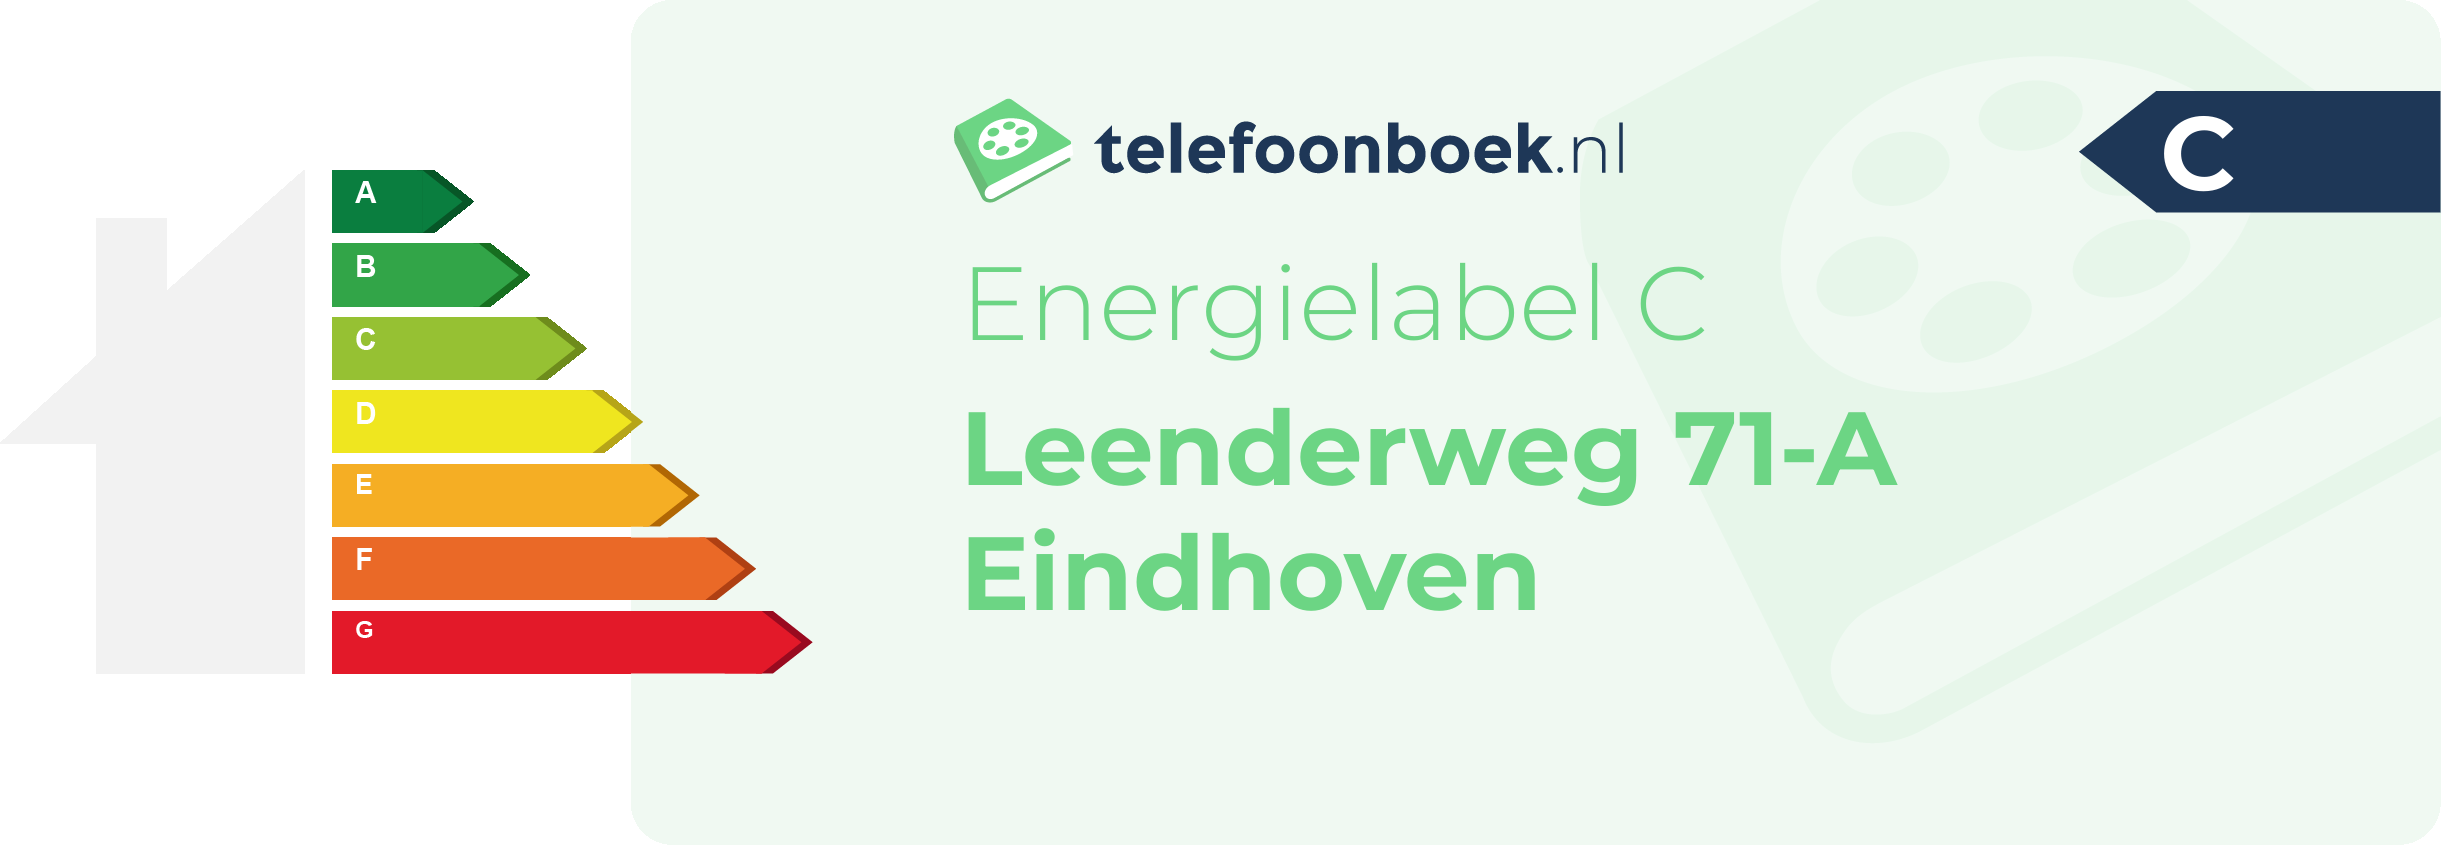 Energielabel Leenderweg 71-A Eindhoven